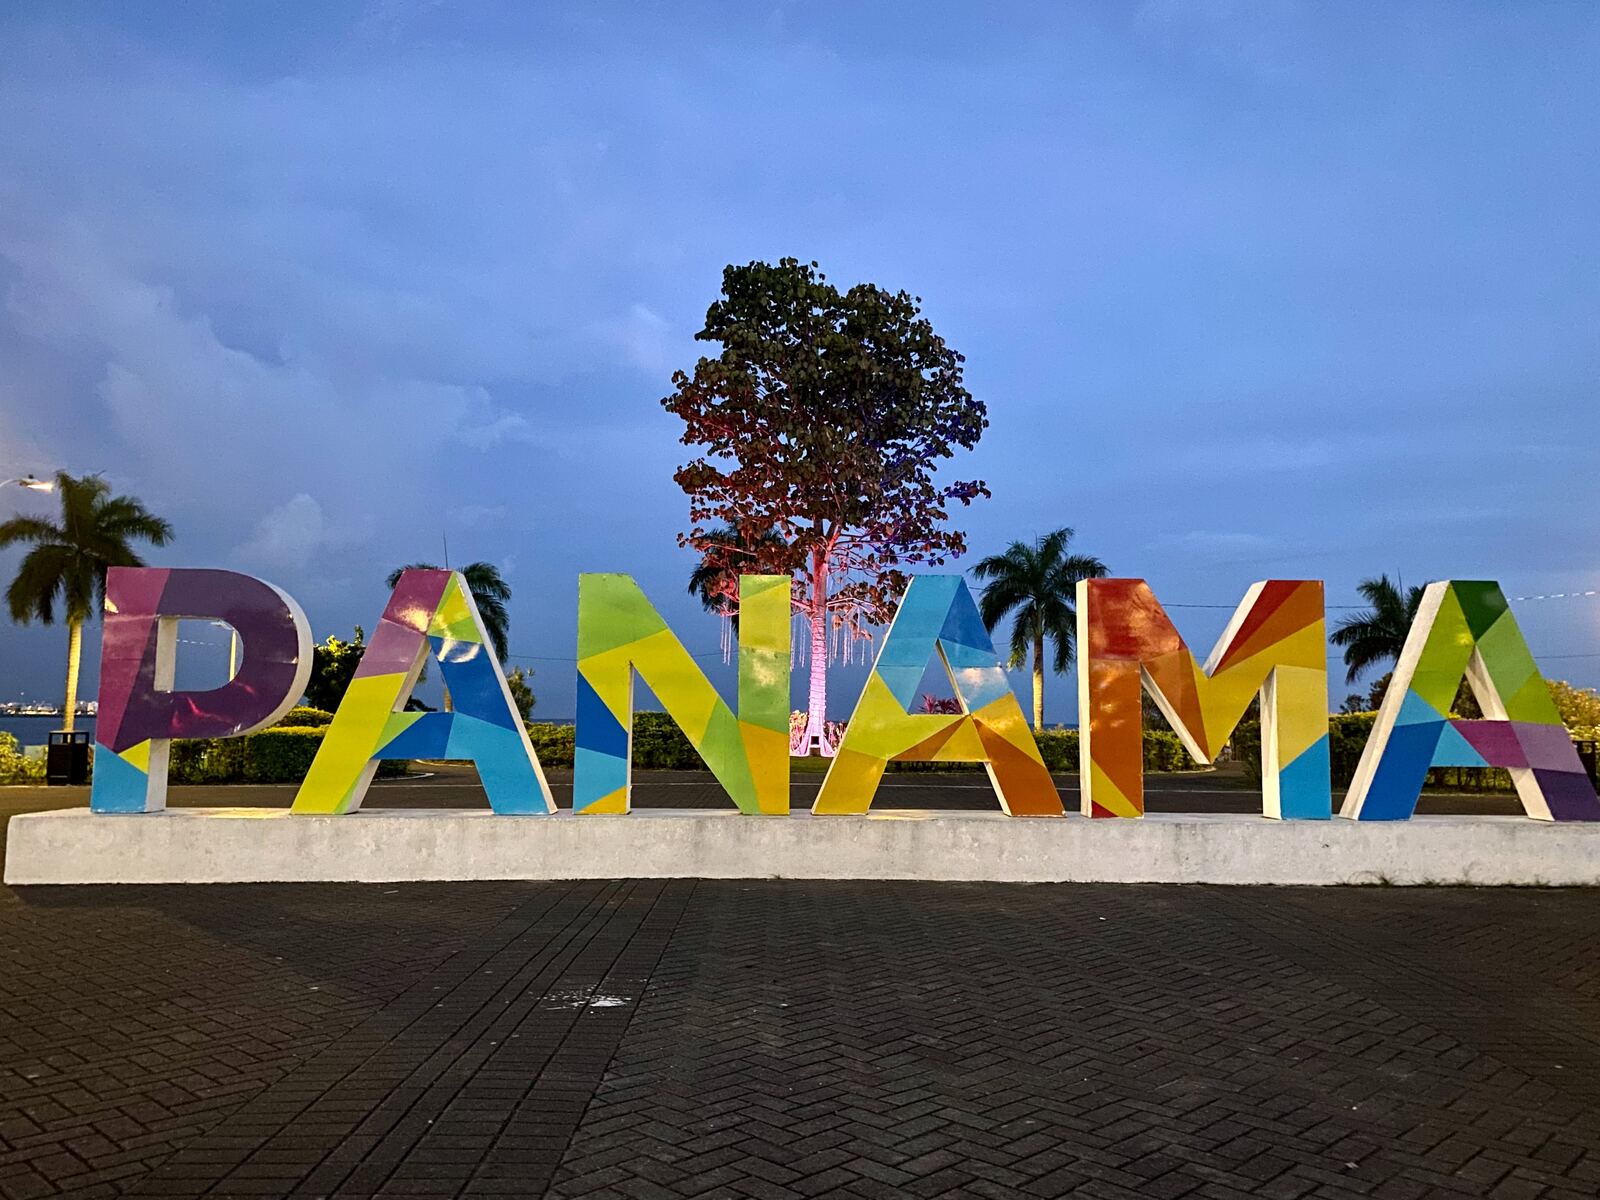 Image of Monumento PANAMÁ by Team PhotoHound